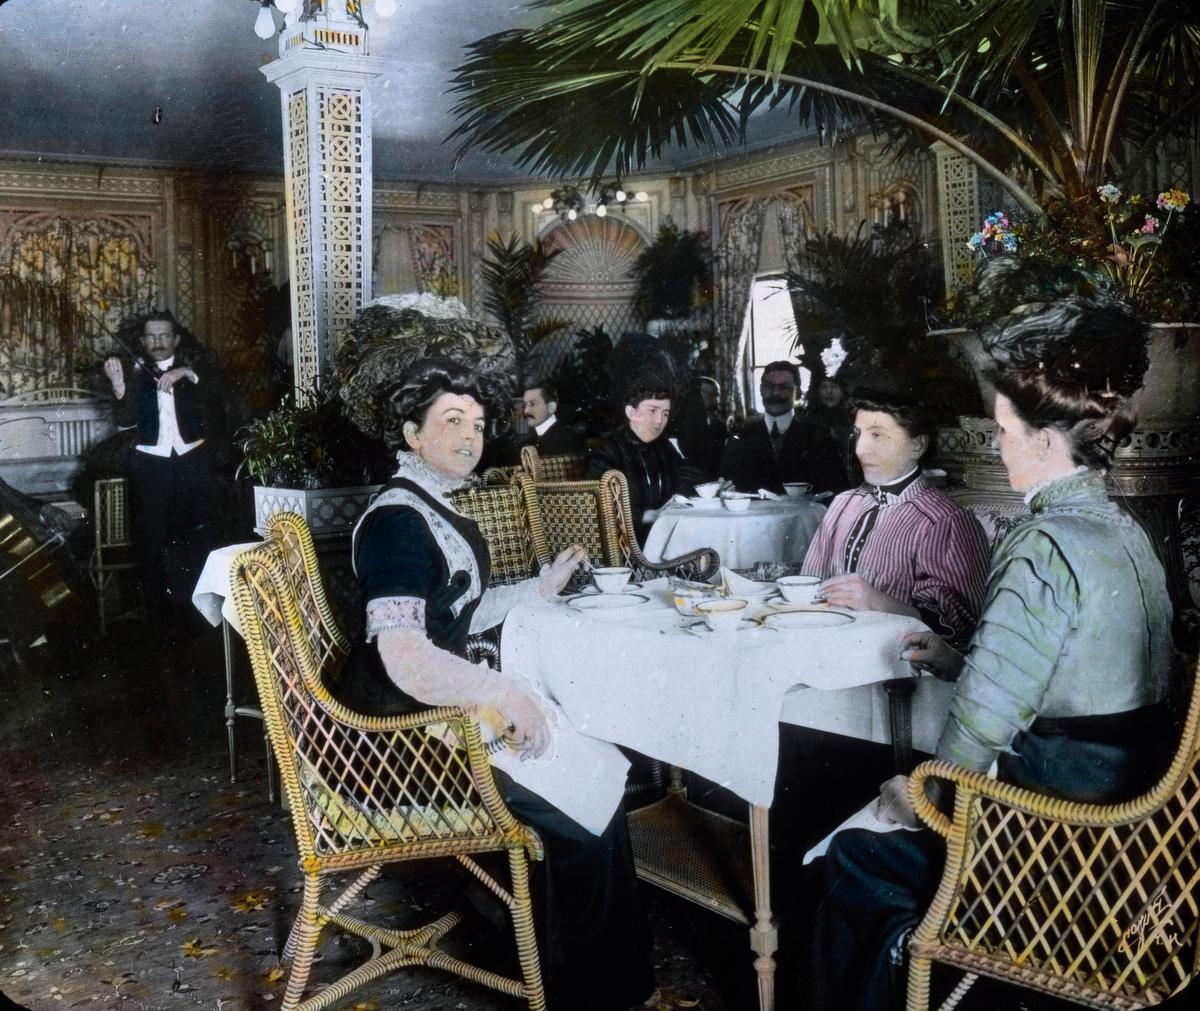 En première classe, les passagers du Titanic étaient assis sur des sièges en rotin de la marque britannique Dryad.